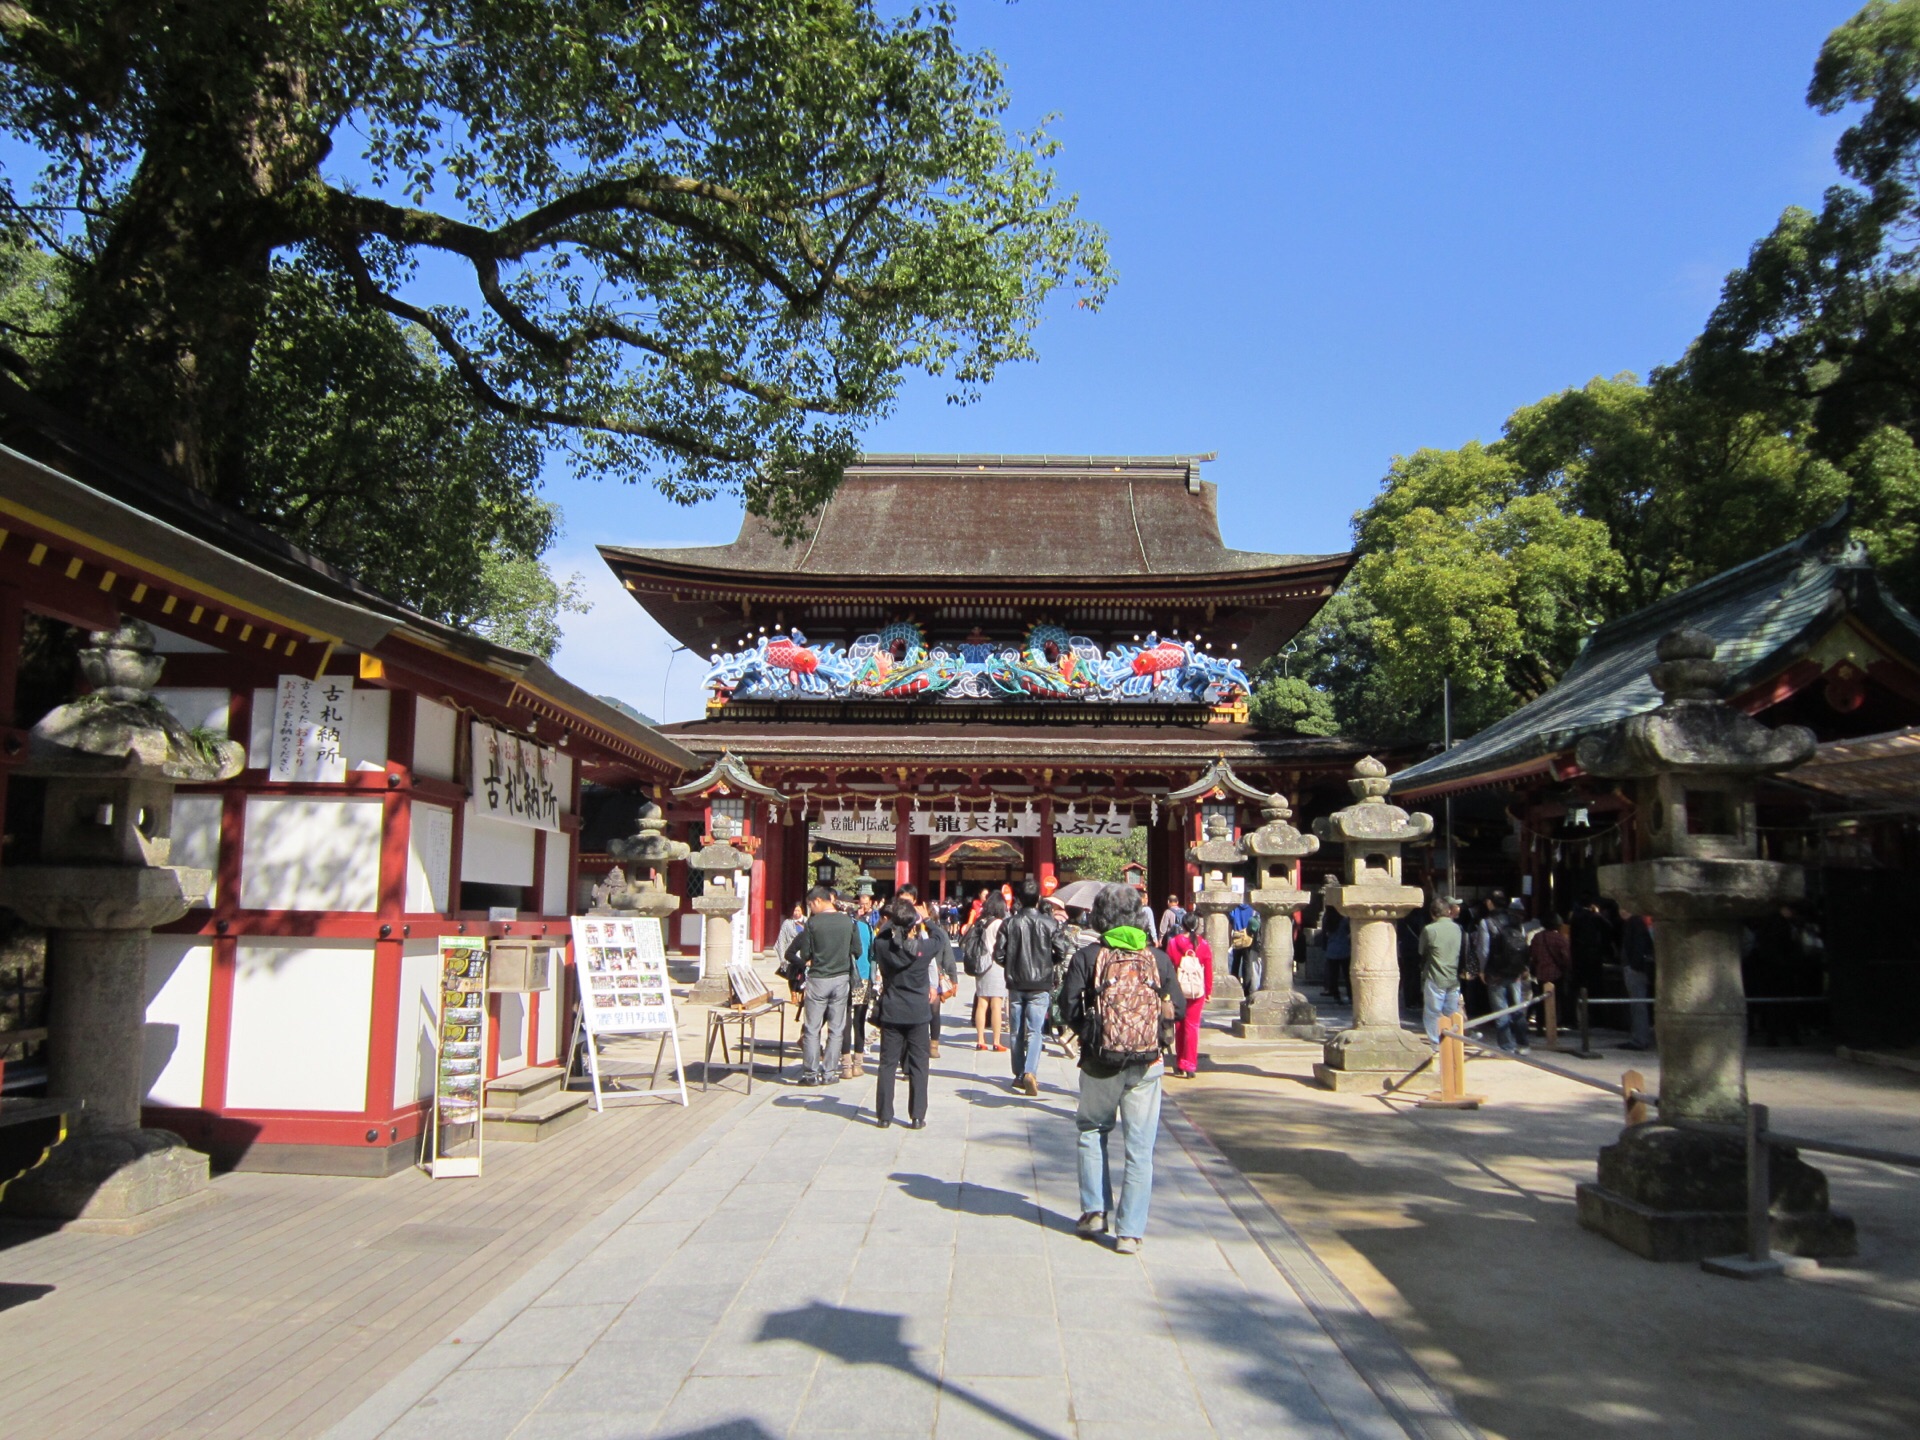 太宰府天满宫是位于日本福冈县太宰府市的神社.